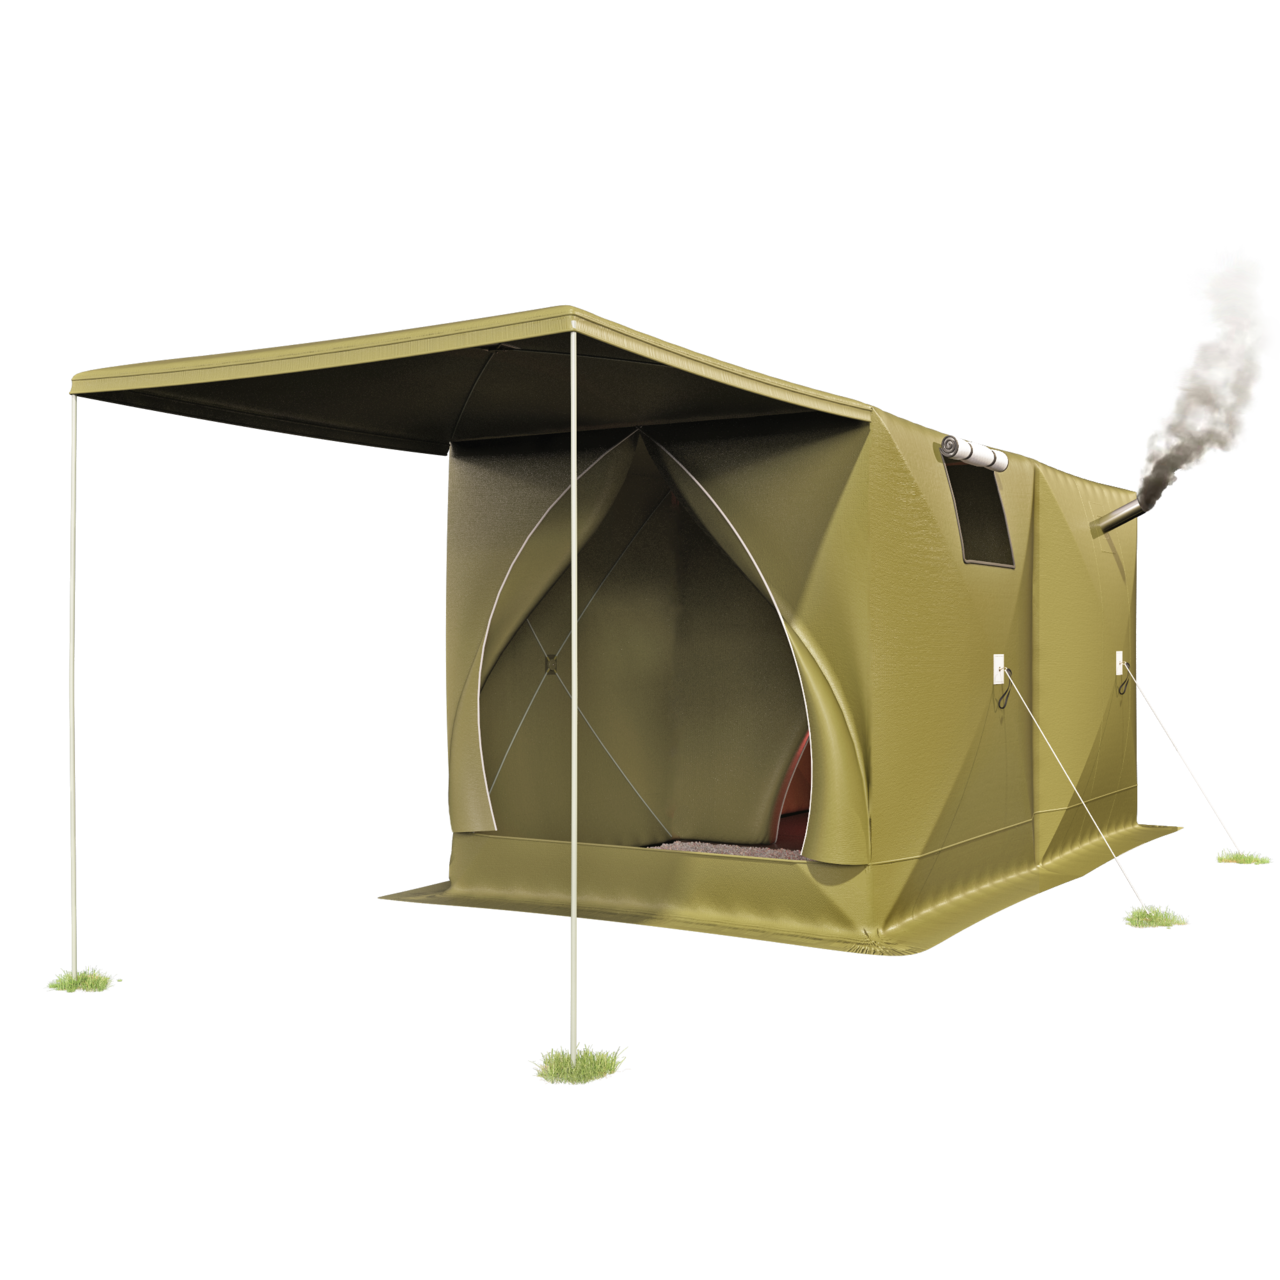 Палатка-шатер дубль 3 с навесом